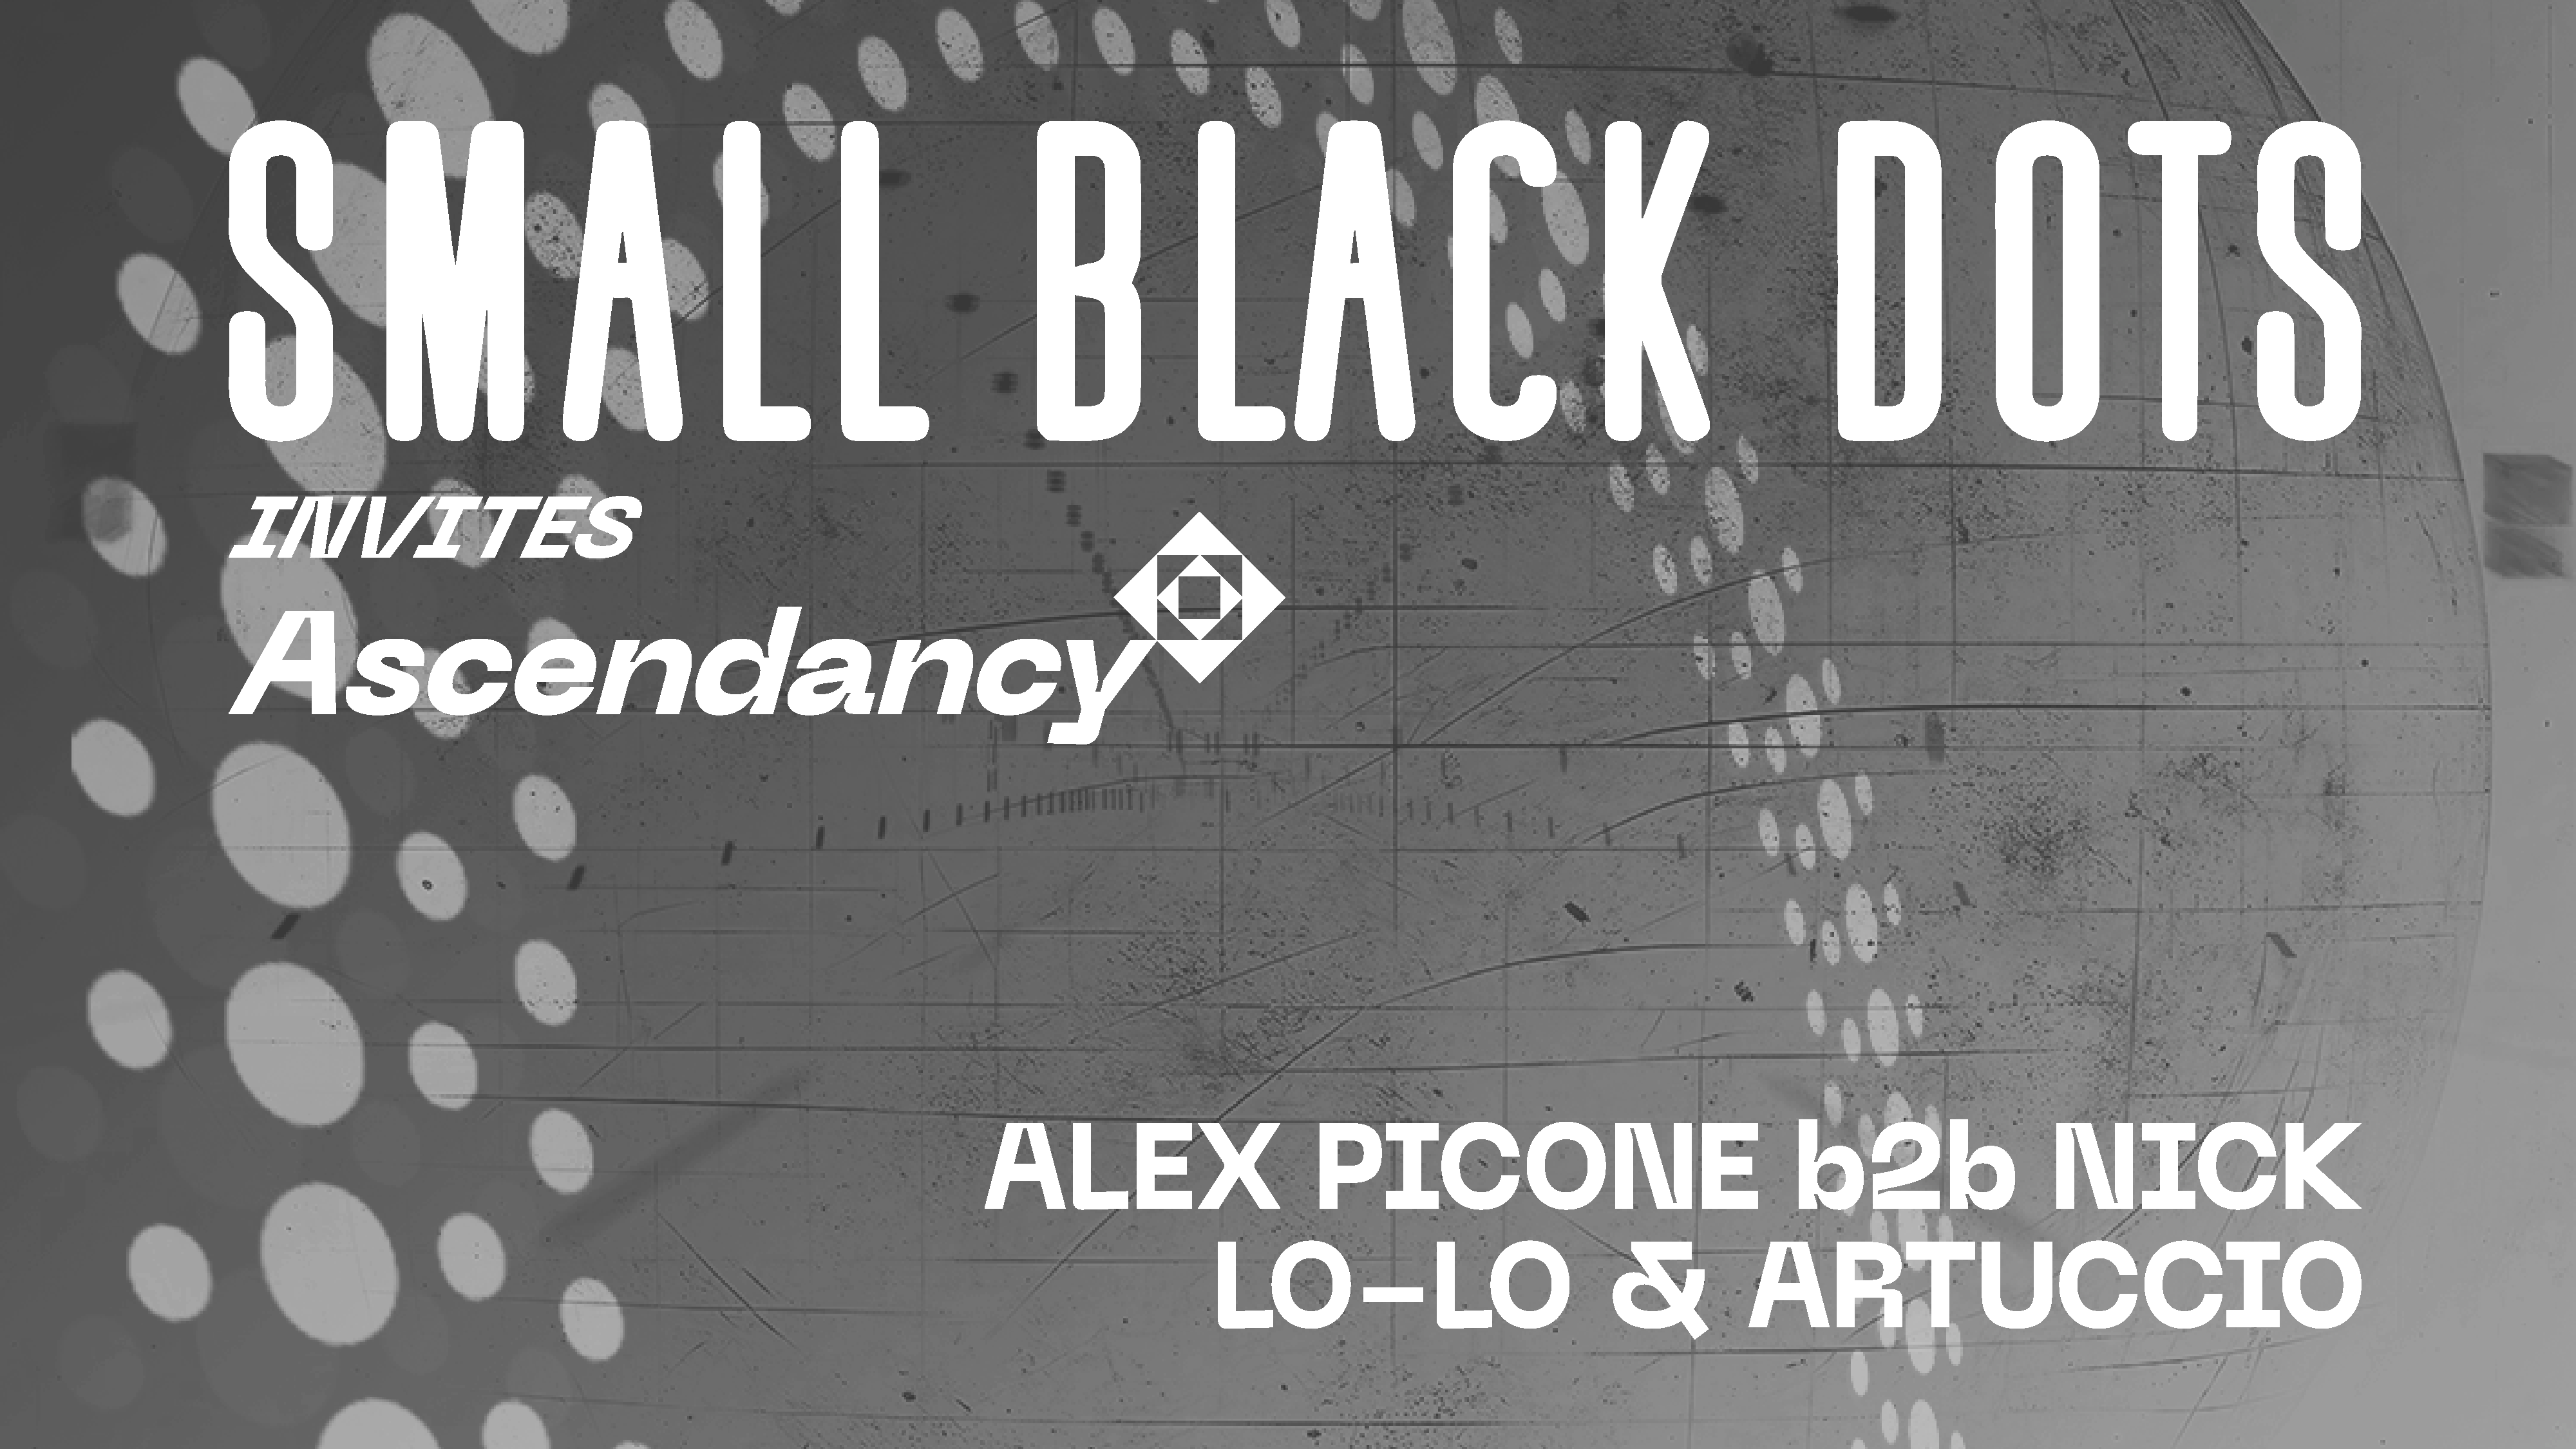 Small Black Dots invites Ascendancy with Alex Picone, Nick, Artuccio & Lo-Lo - Página frontal